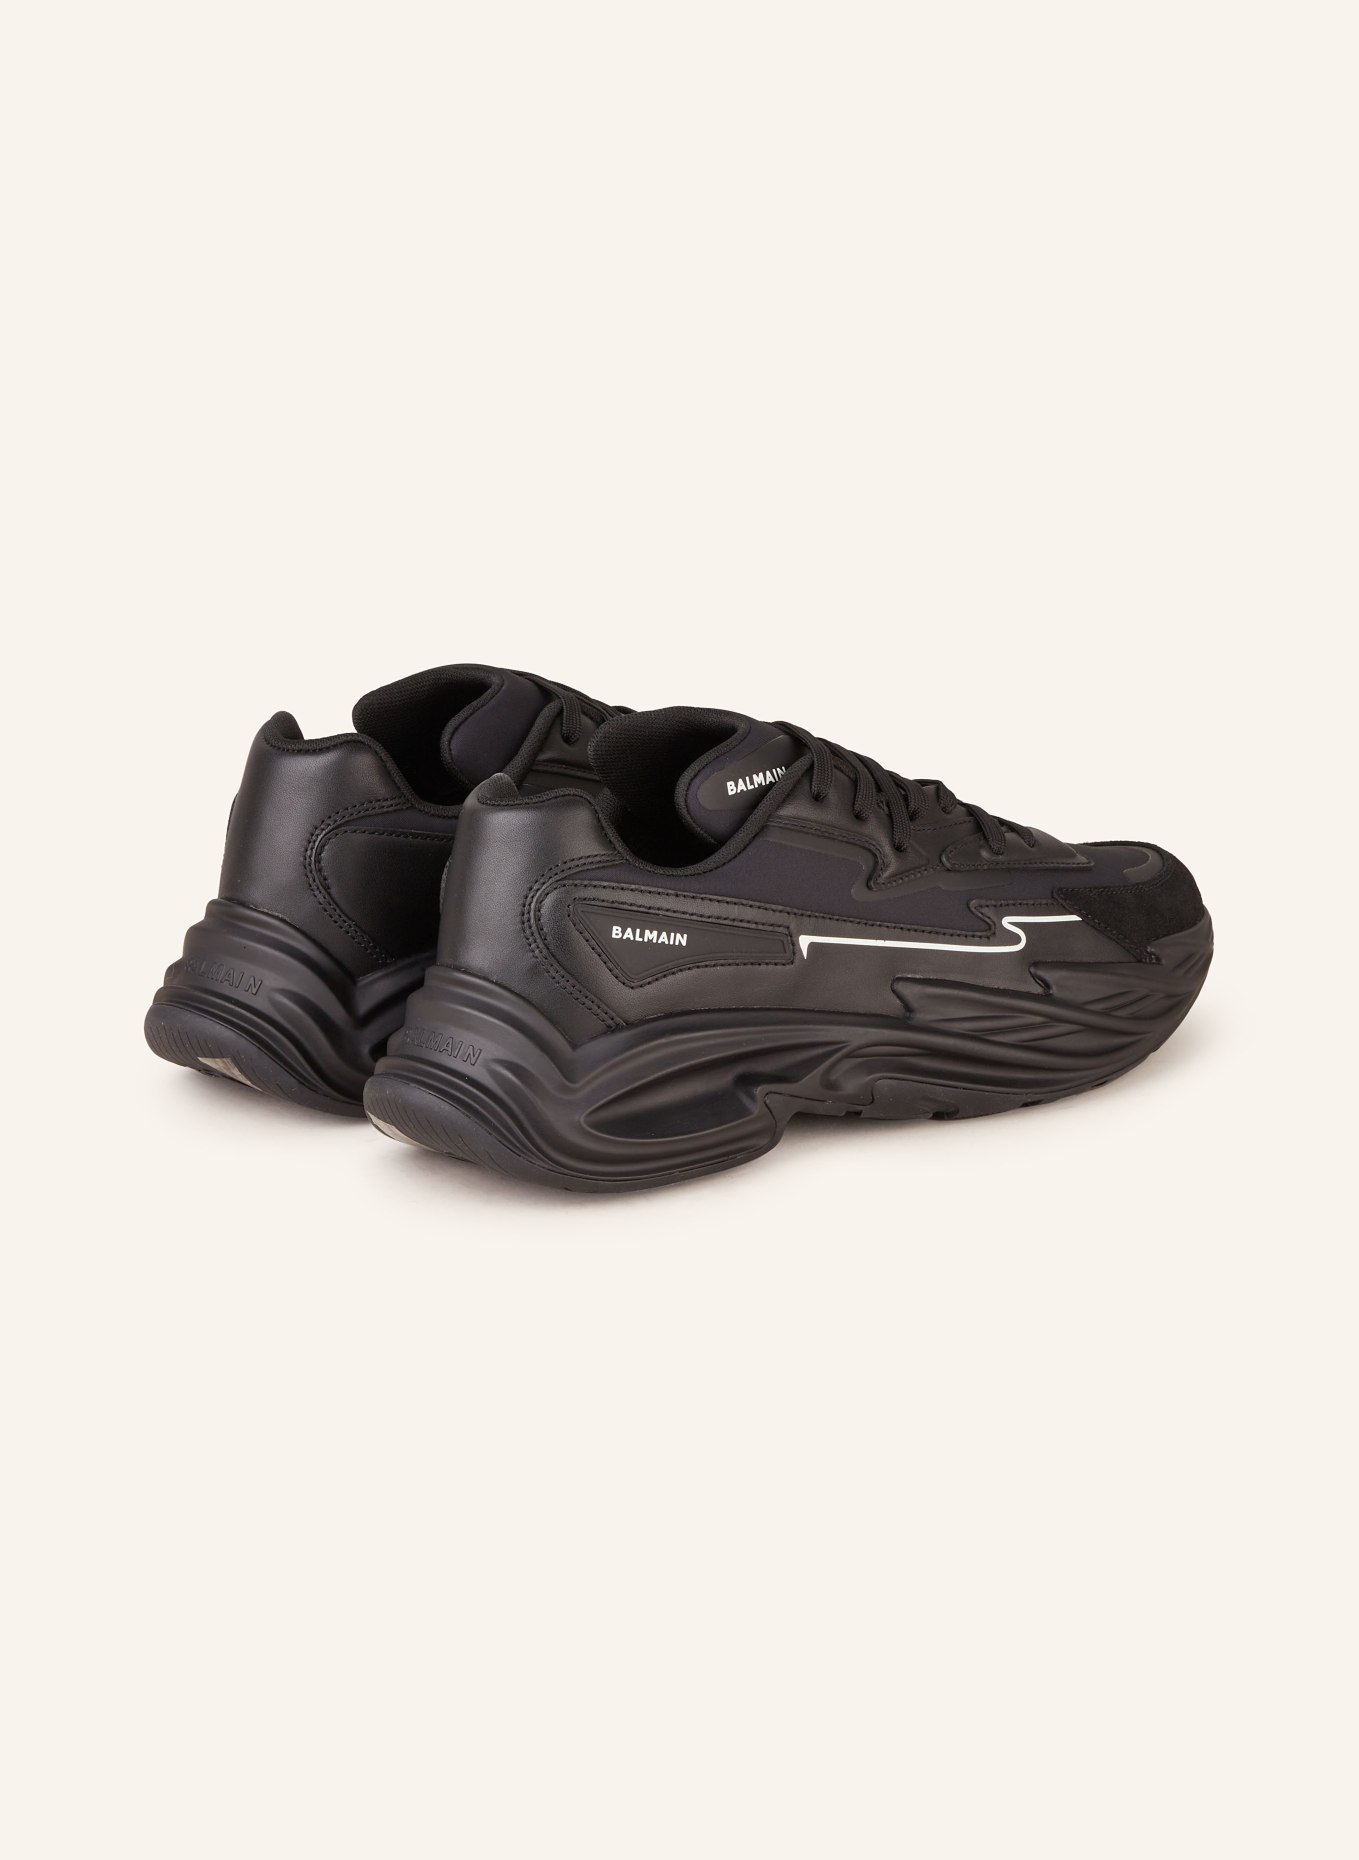 BALMAIN Sneakers B-DR4G0N, Color: BLACK (Image 2)